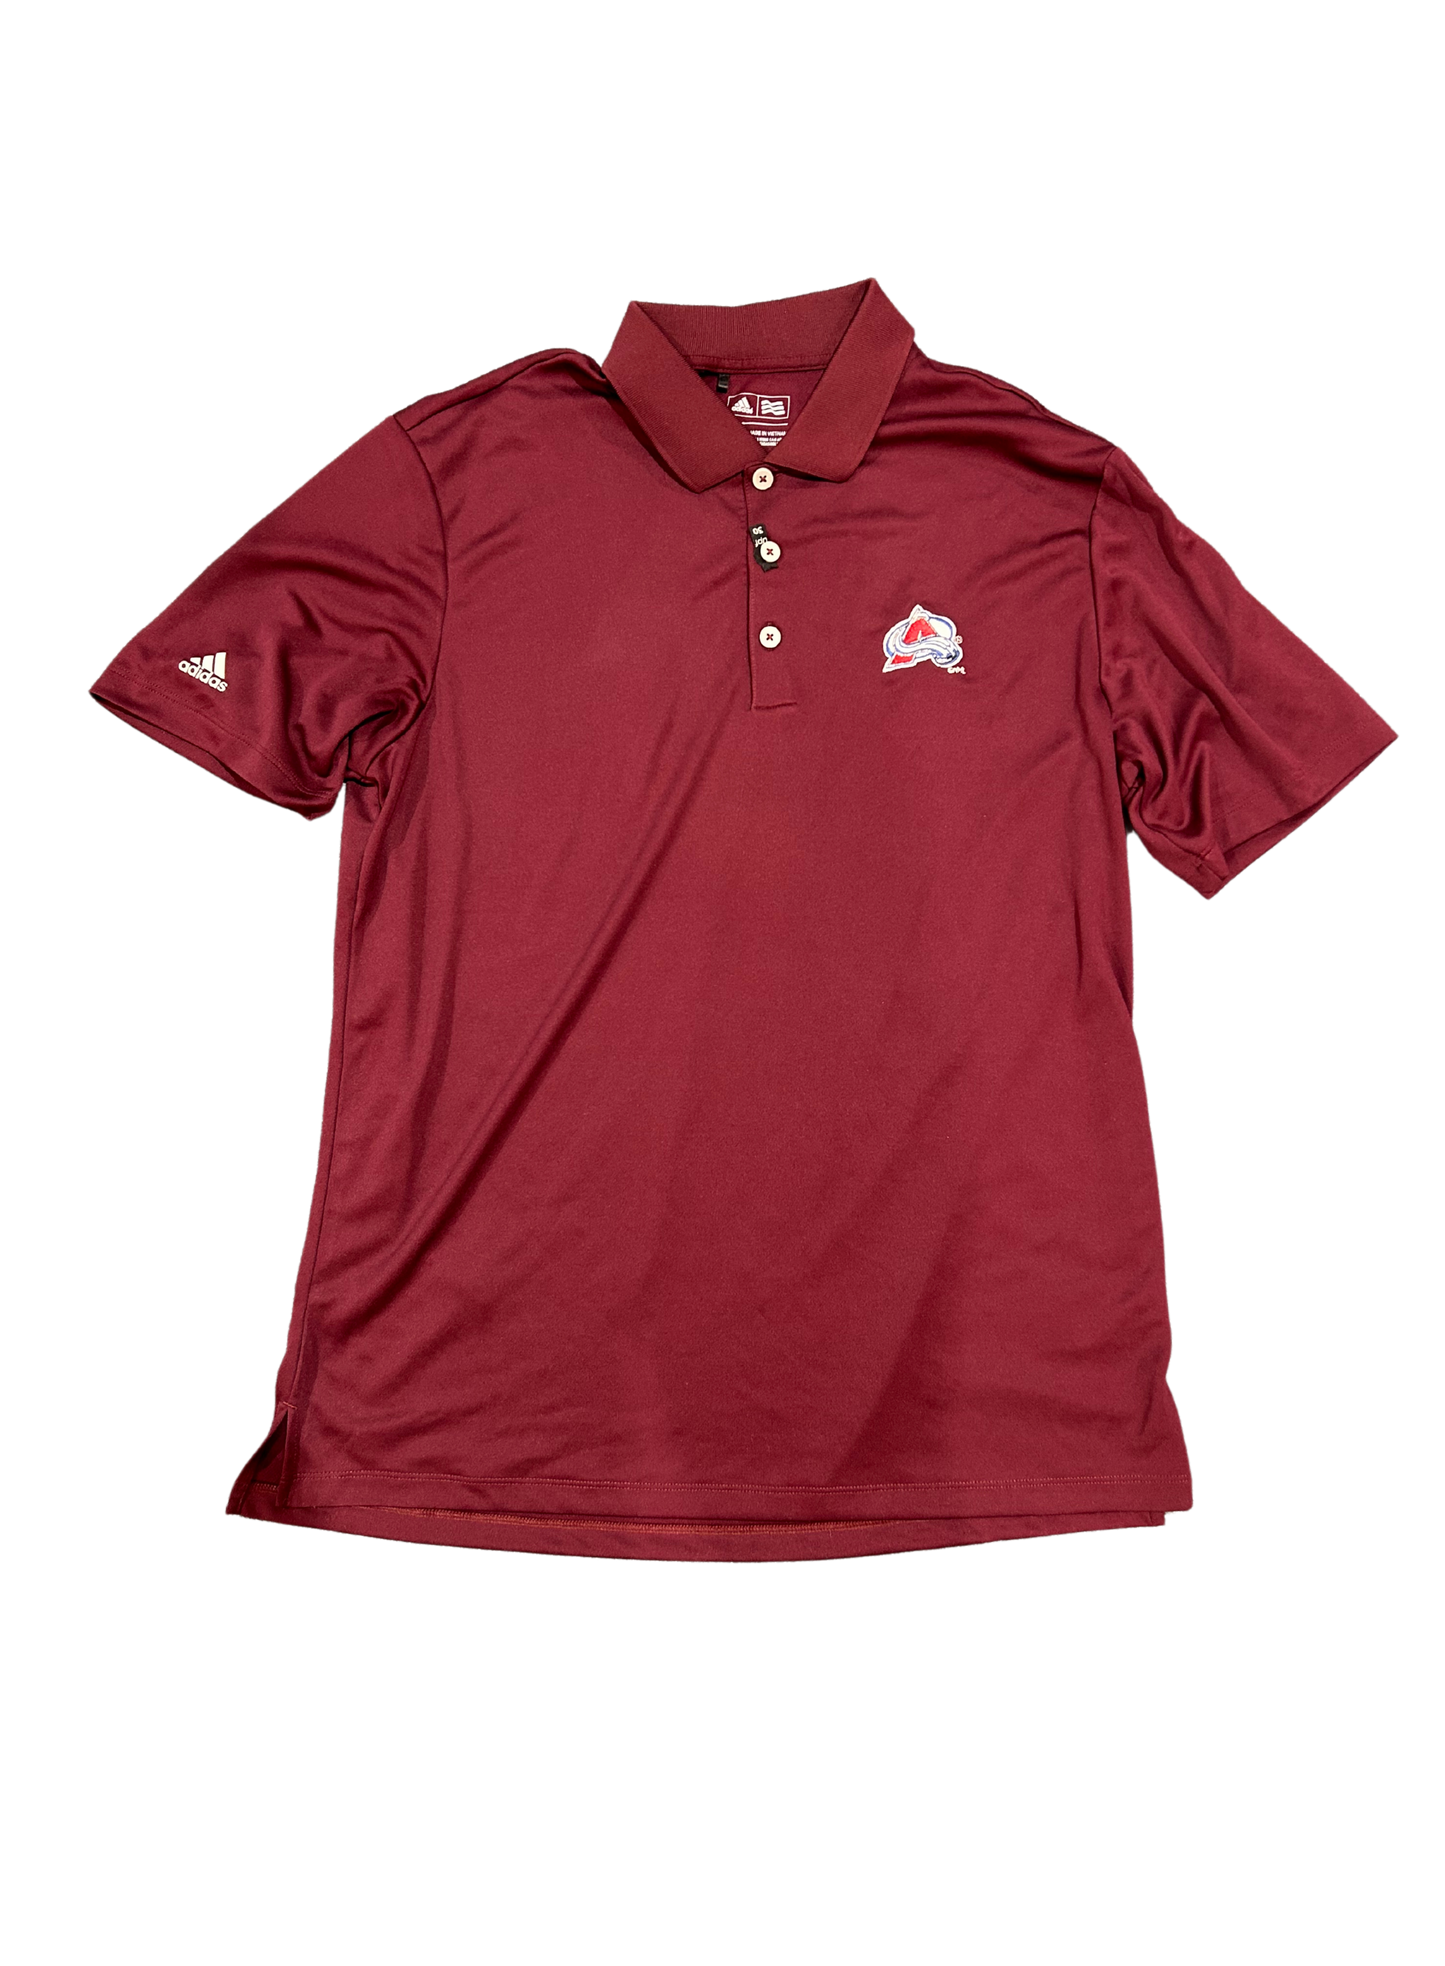 Colorado Avalanche Maroon (Regular Logo) Adidas Golf Polo